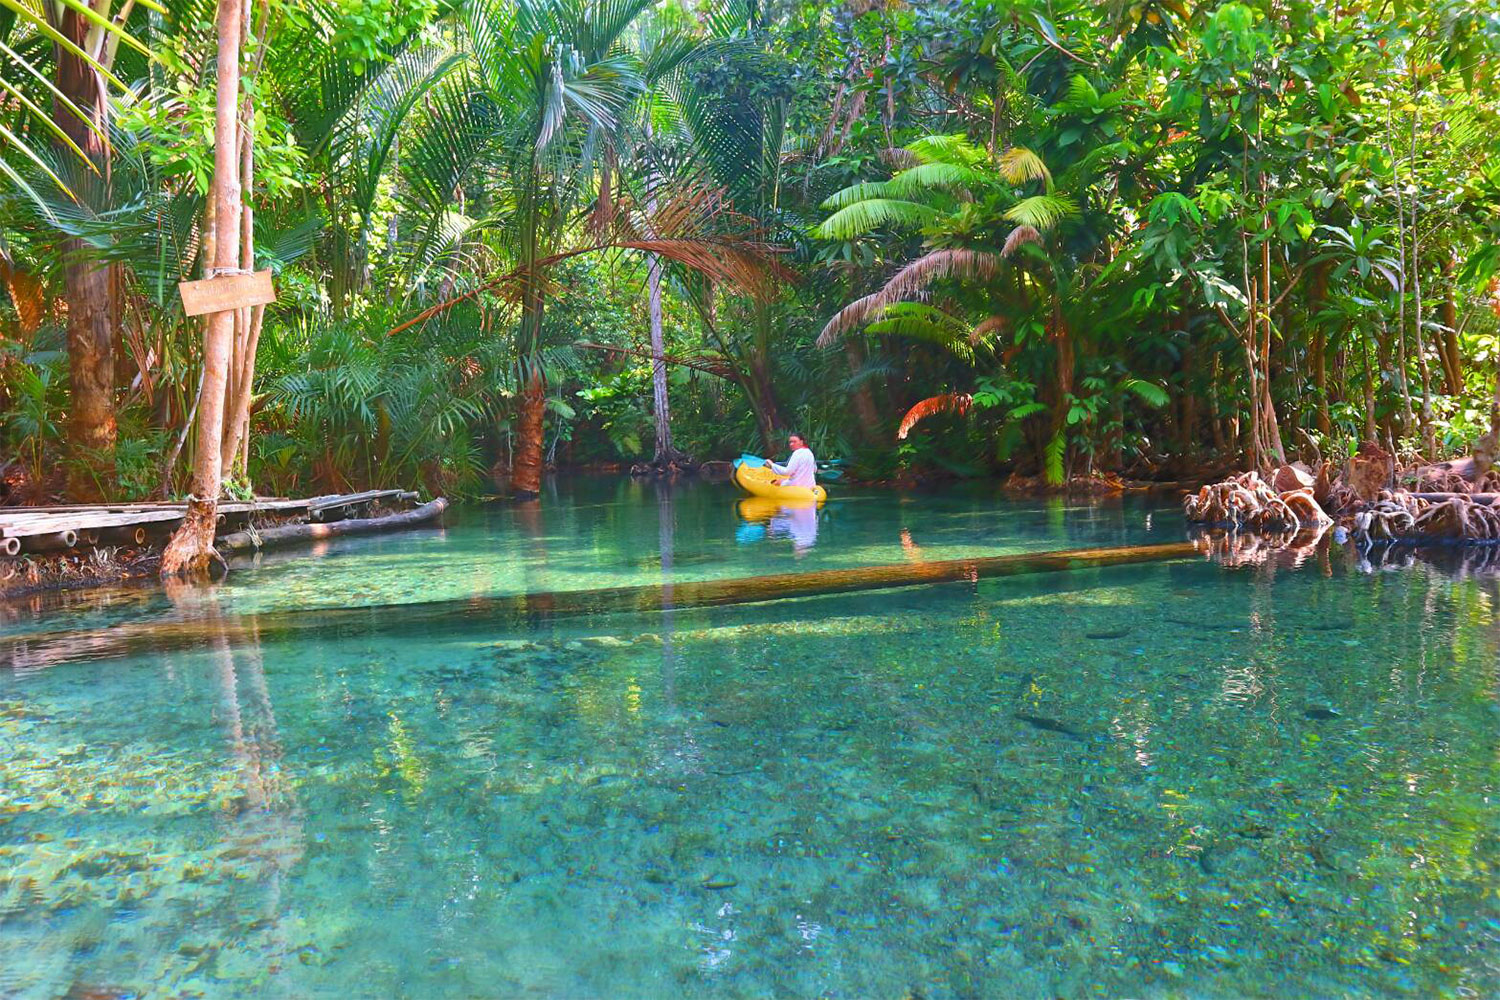 Krabi tour package 3 days 2 nights, great value, emerald pool tour, hot waterfall + 4 island trip + kayaking